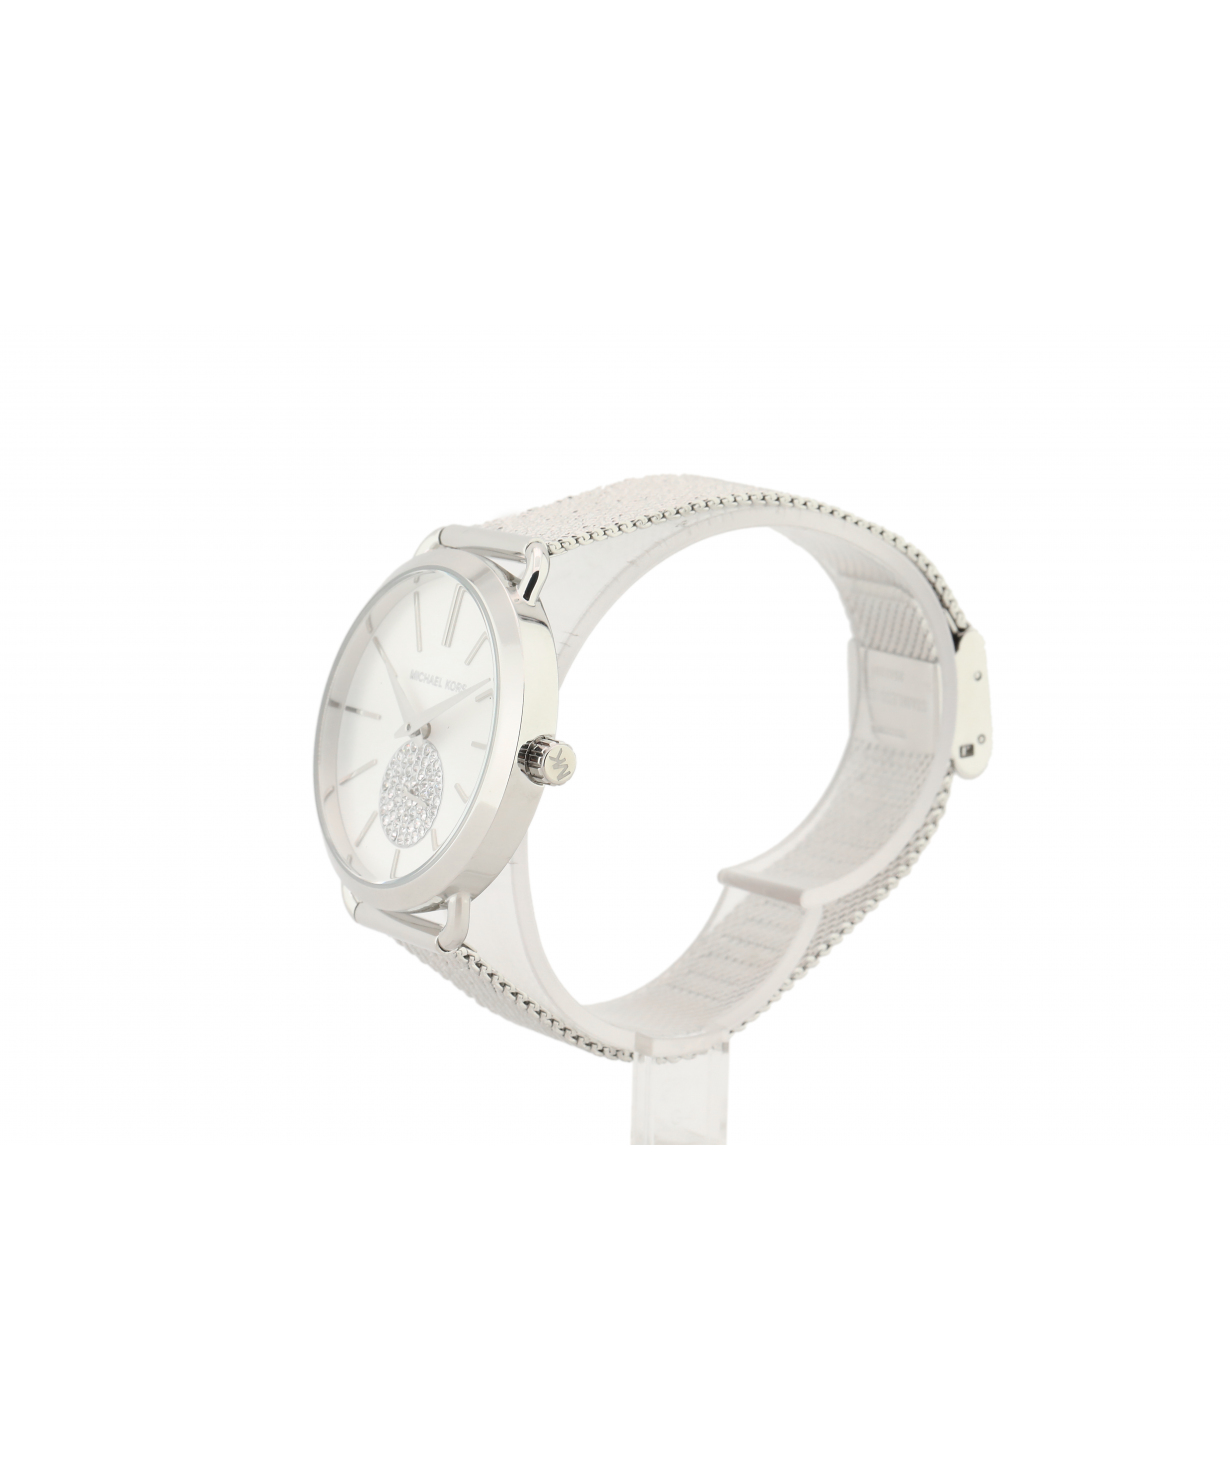 Ժամացույց «Michael Kors» ձեռքի  MK3843